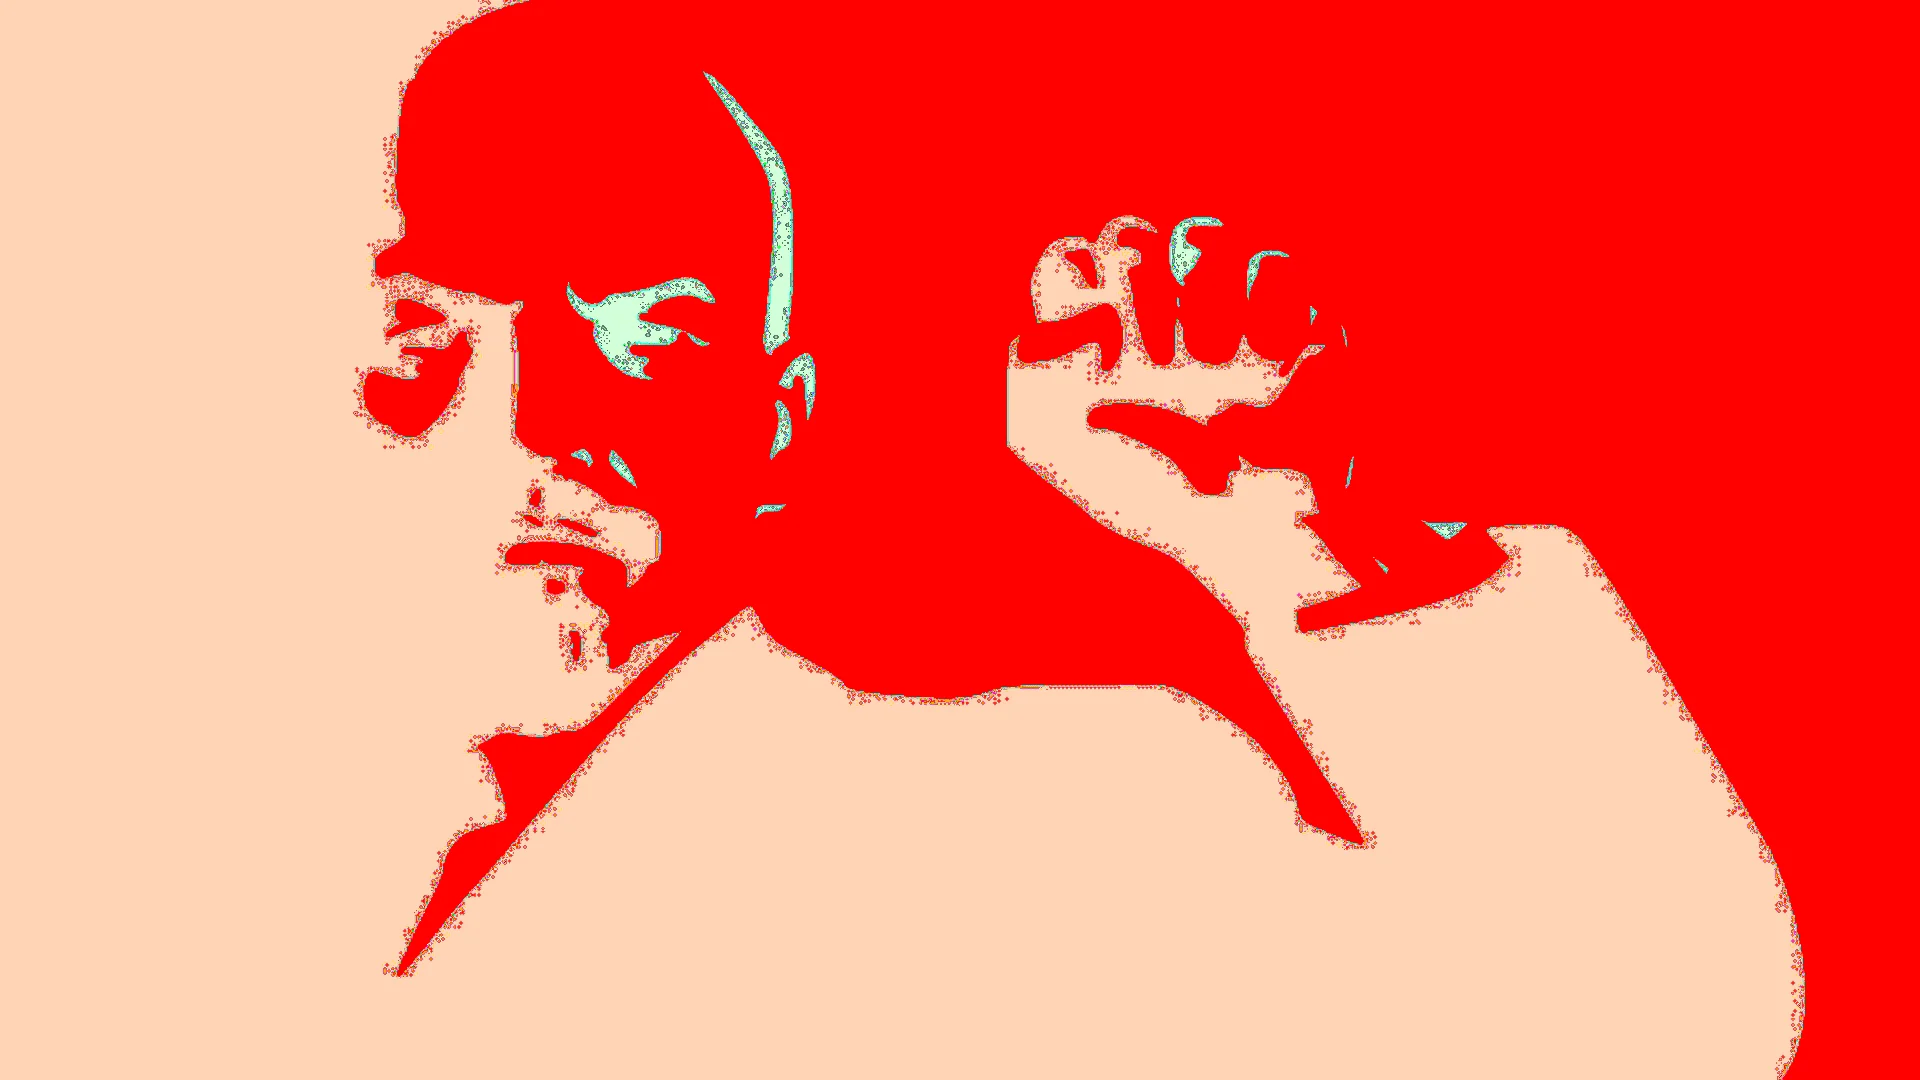 Маркс Энгельс Ленин Сталин арт